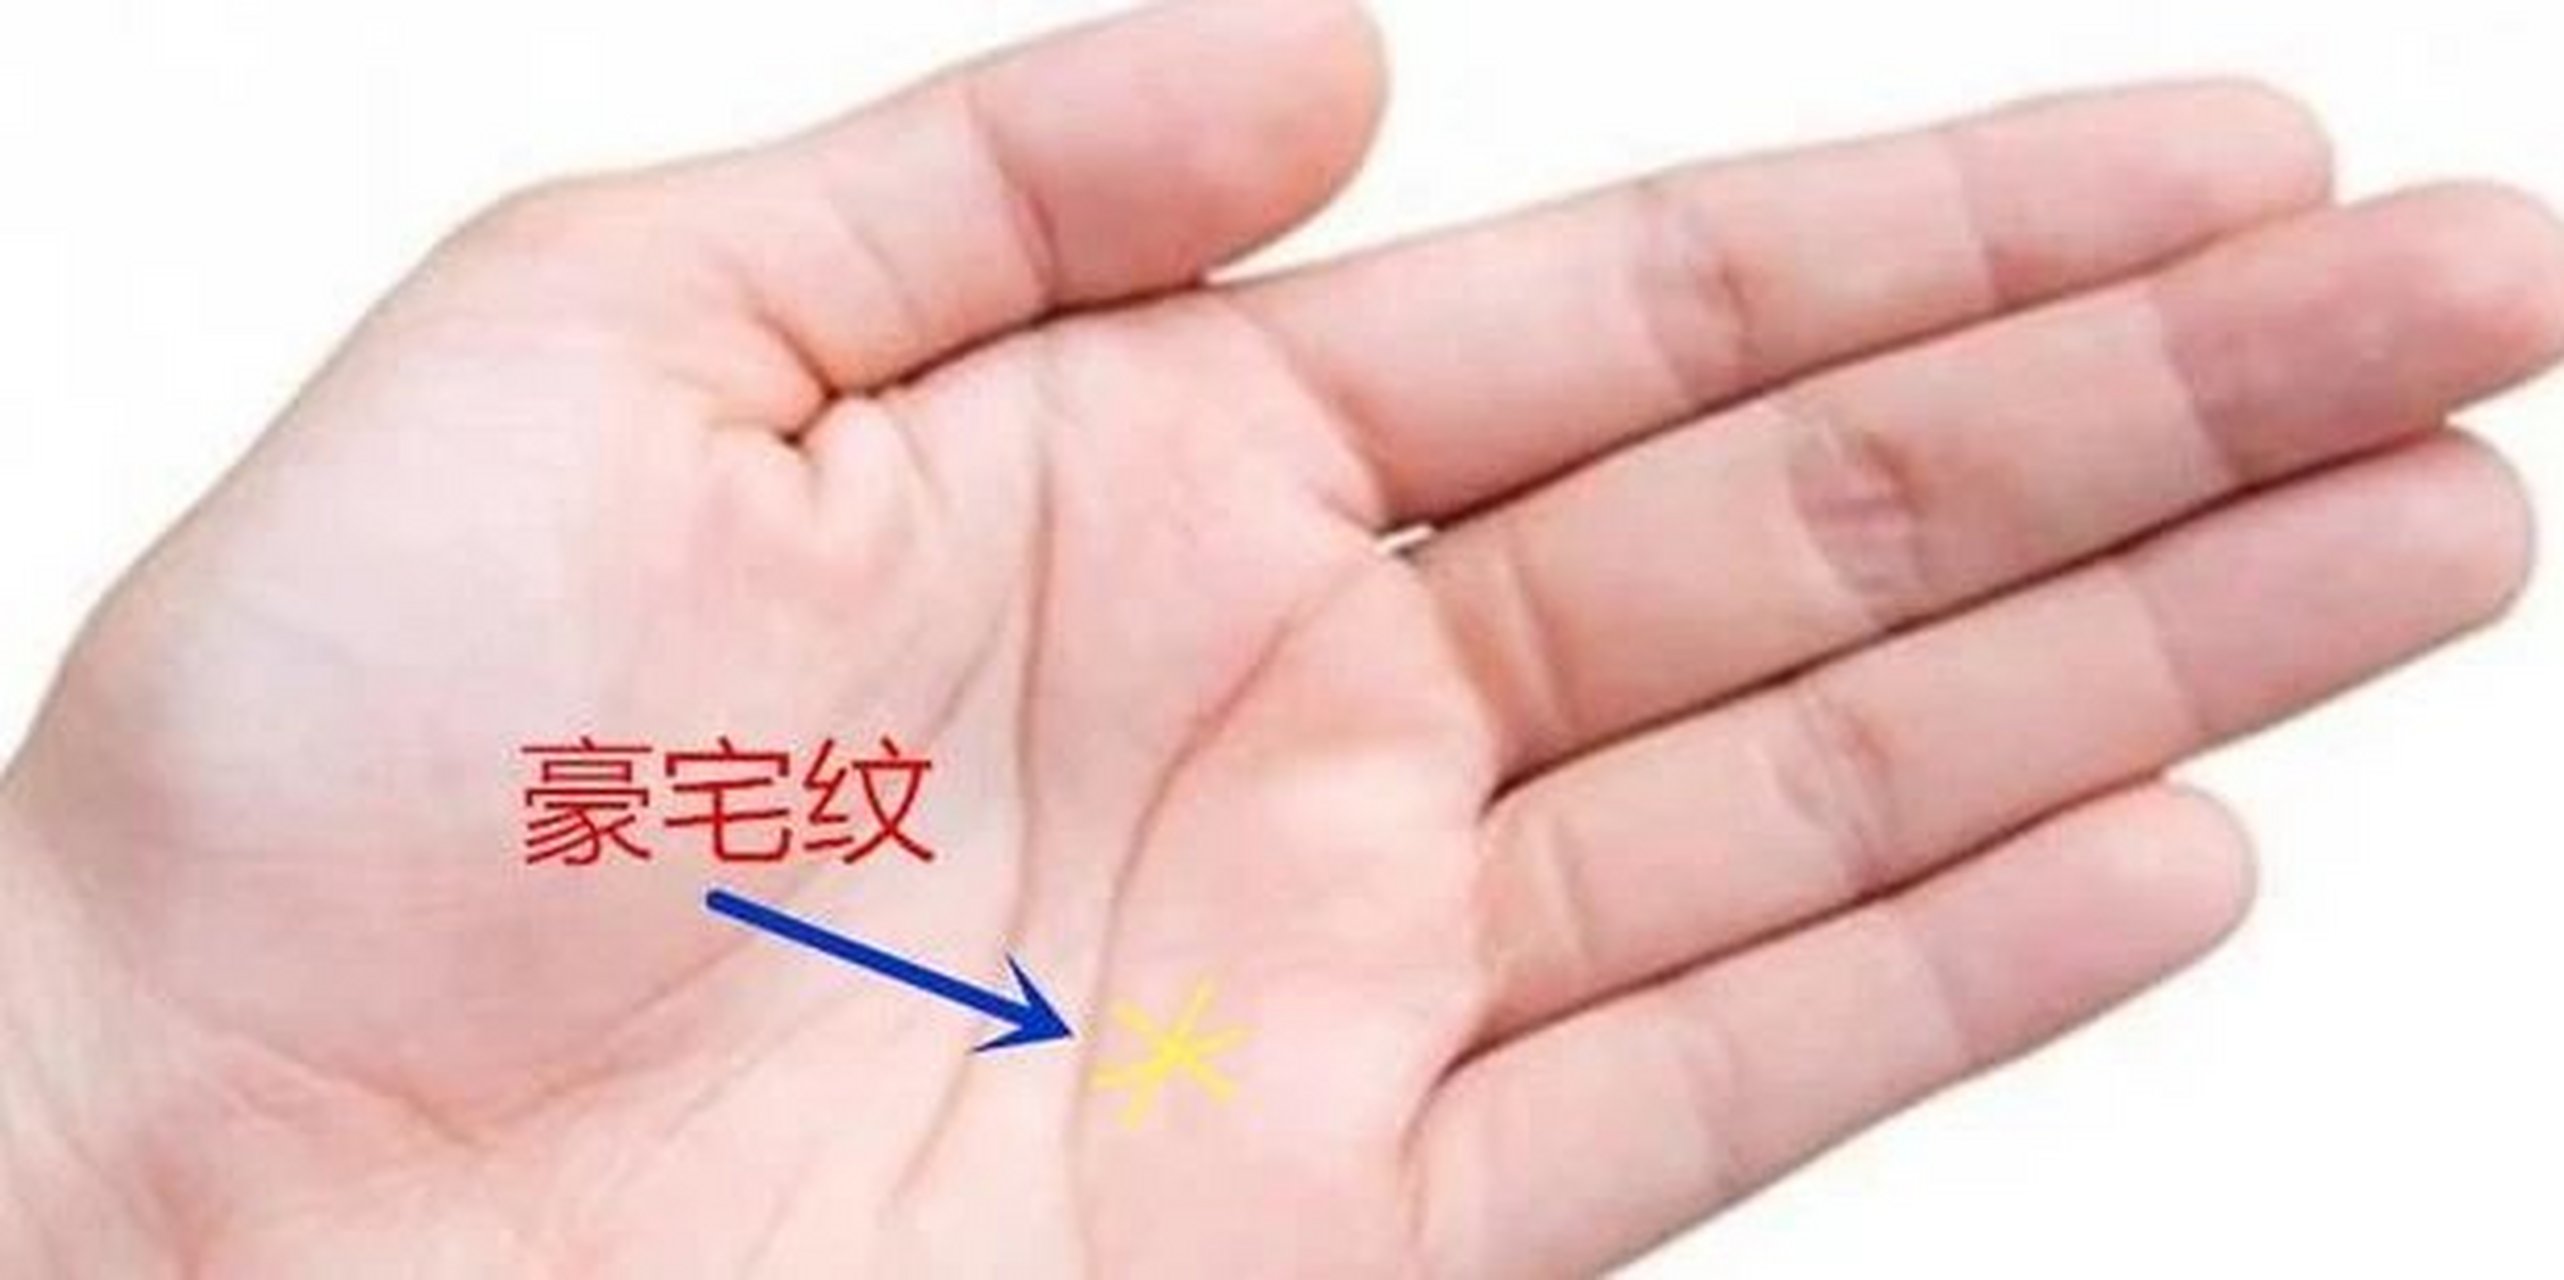 大拇指的第二节出现的橫纹或竖纹称之为财富纹,大姆指第二节与手掌的